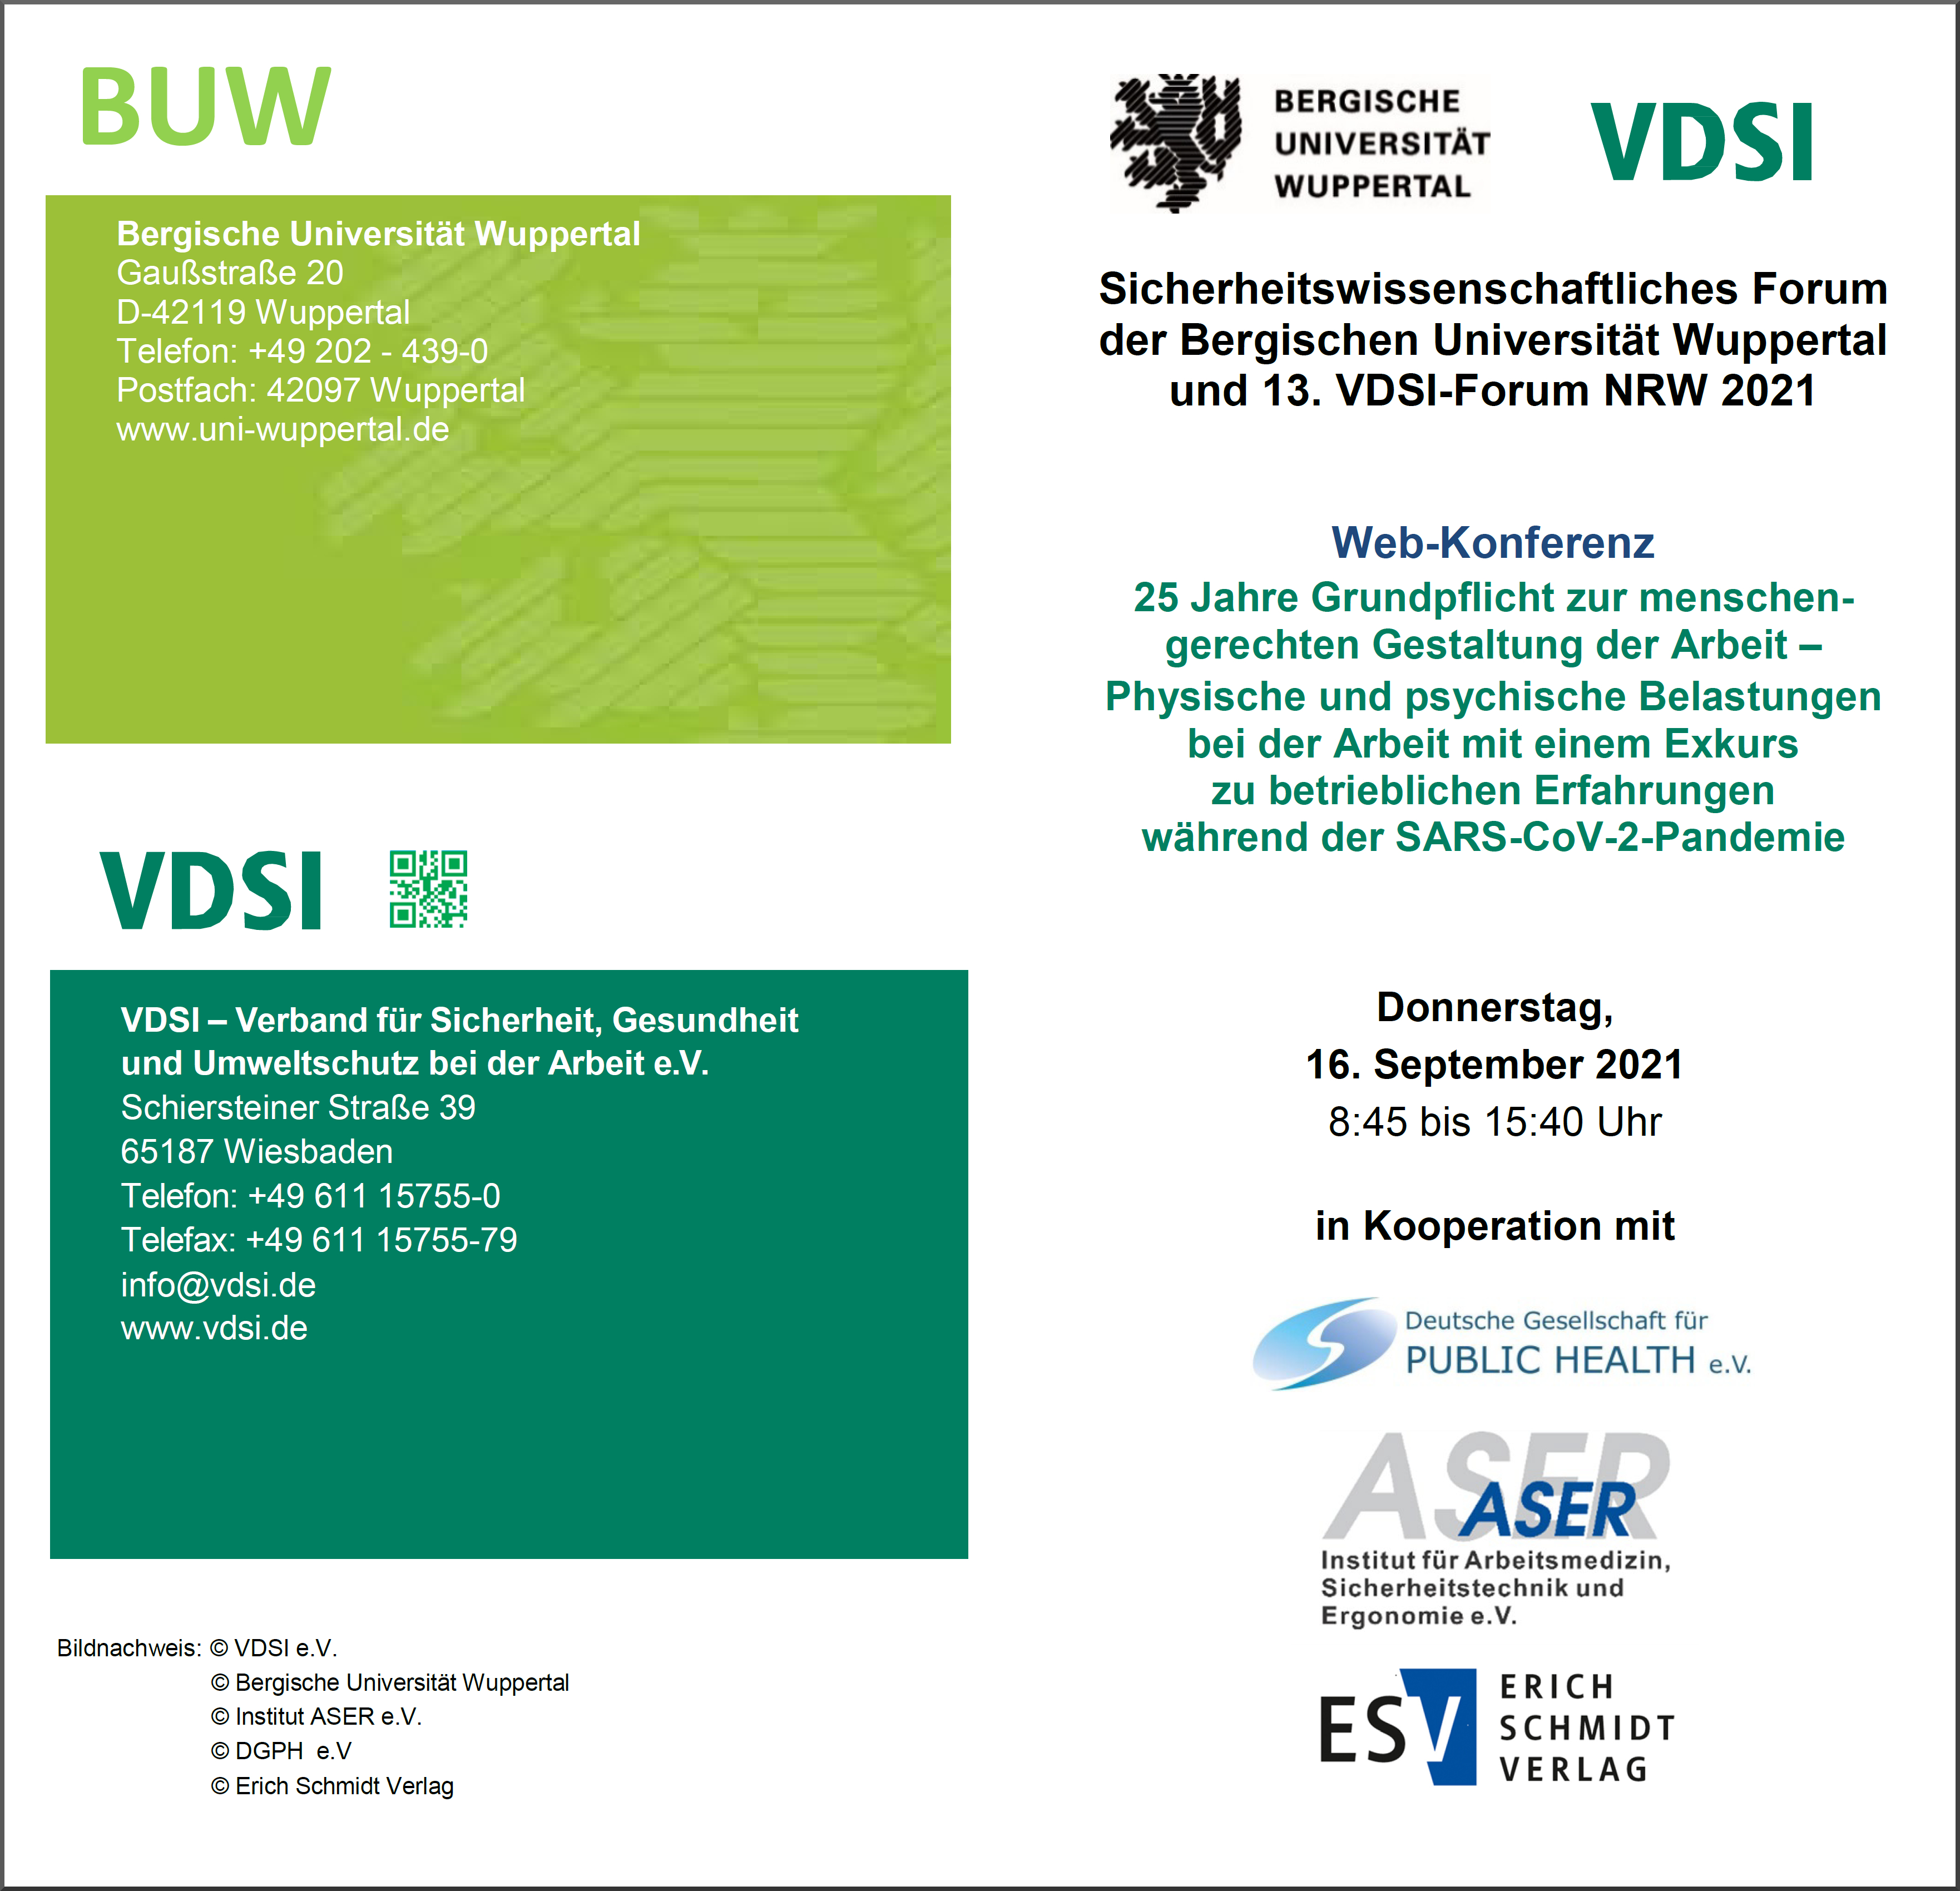 Sicherheitswissenschaftliches Forum der Bergischen Universität Wuppertal und 13. VDSI-Forum NRW 2021